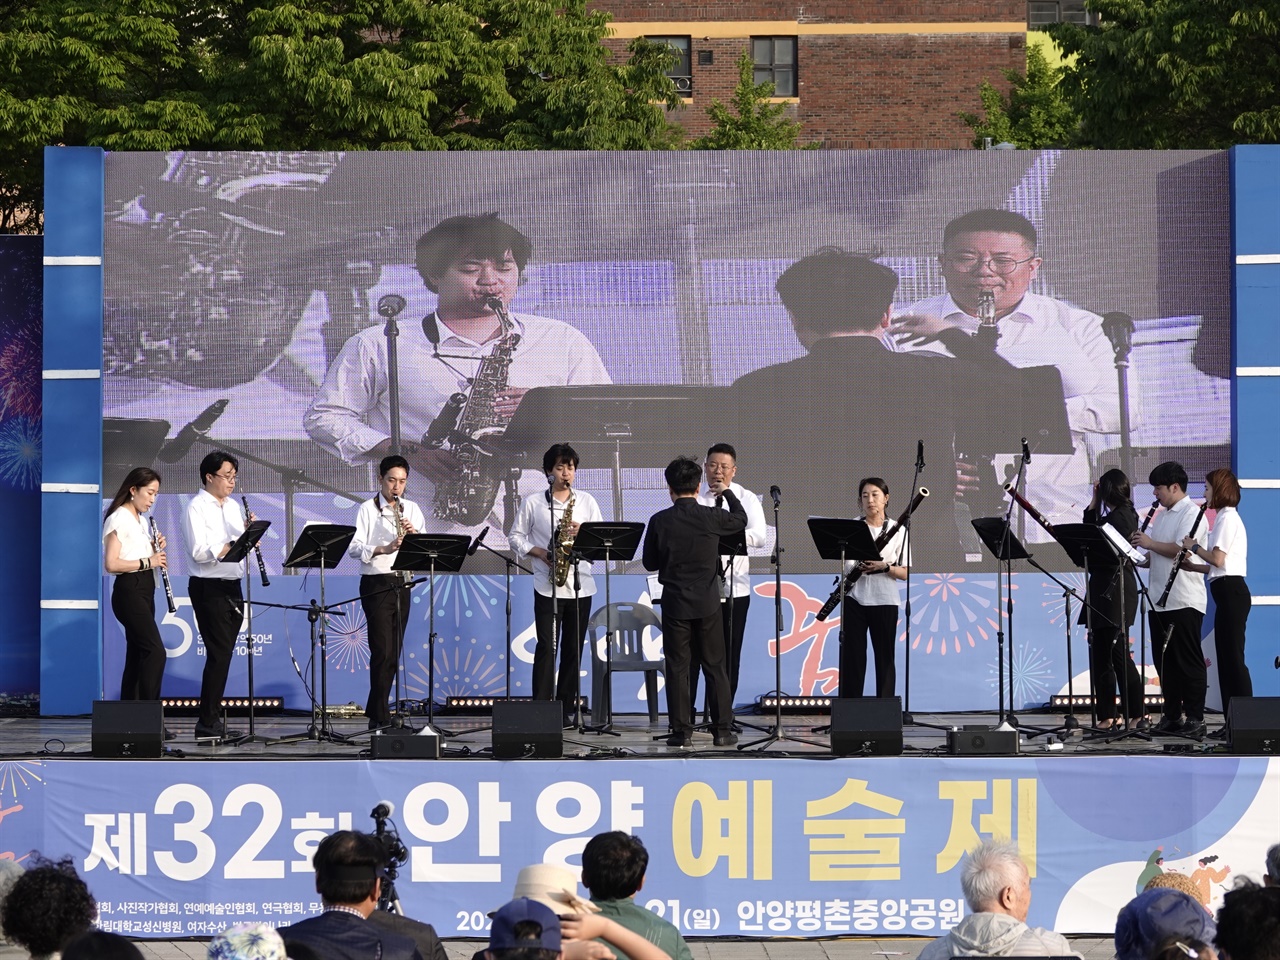 5월20일 평촌중앙공원에서 열린 제32회 안양예술제의 개막식을 앞두고
음악 연주가 공연되고 있다.